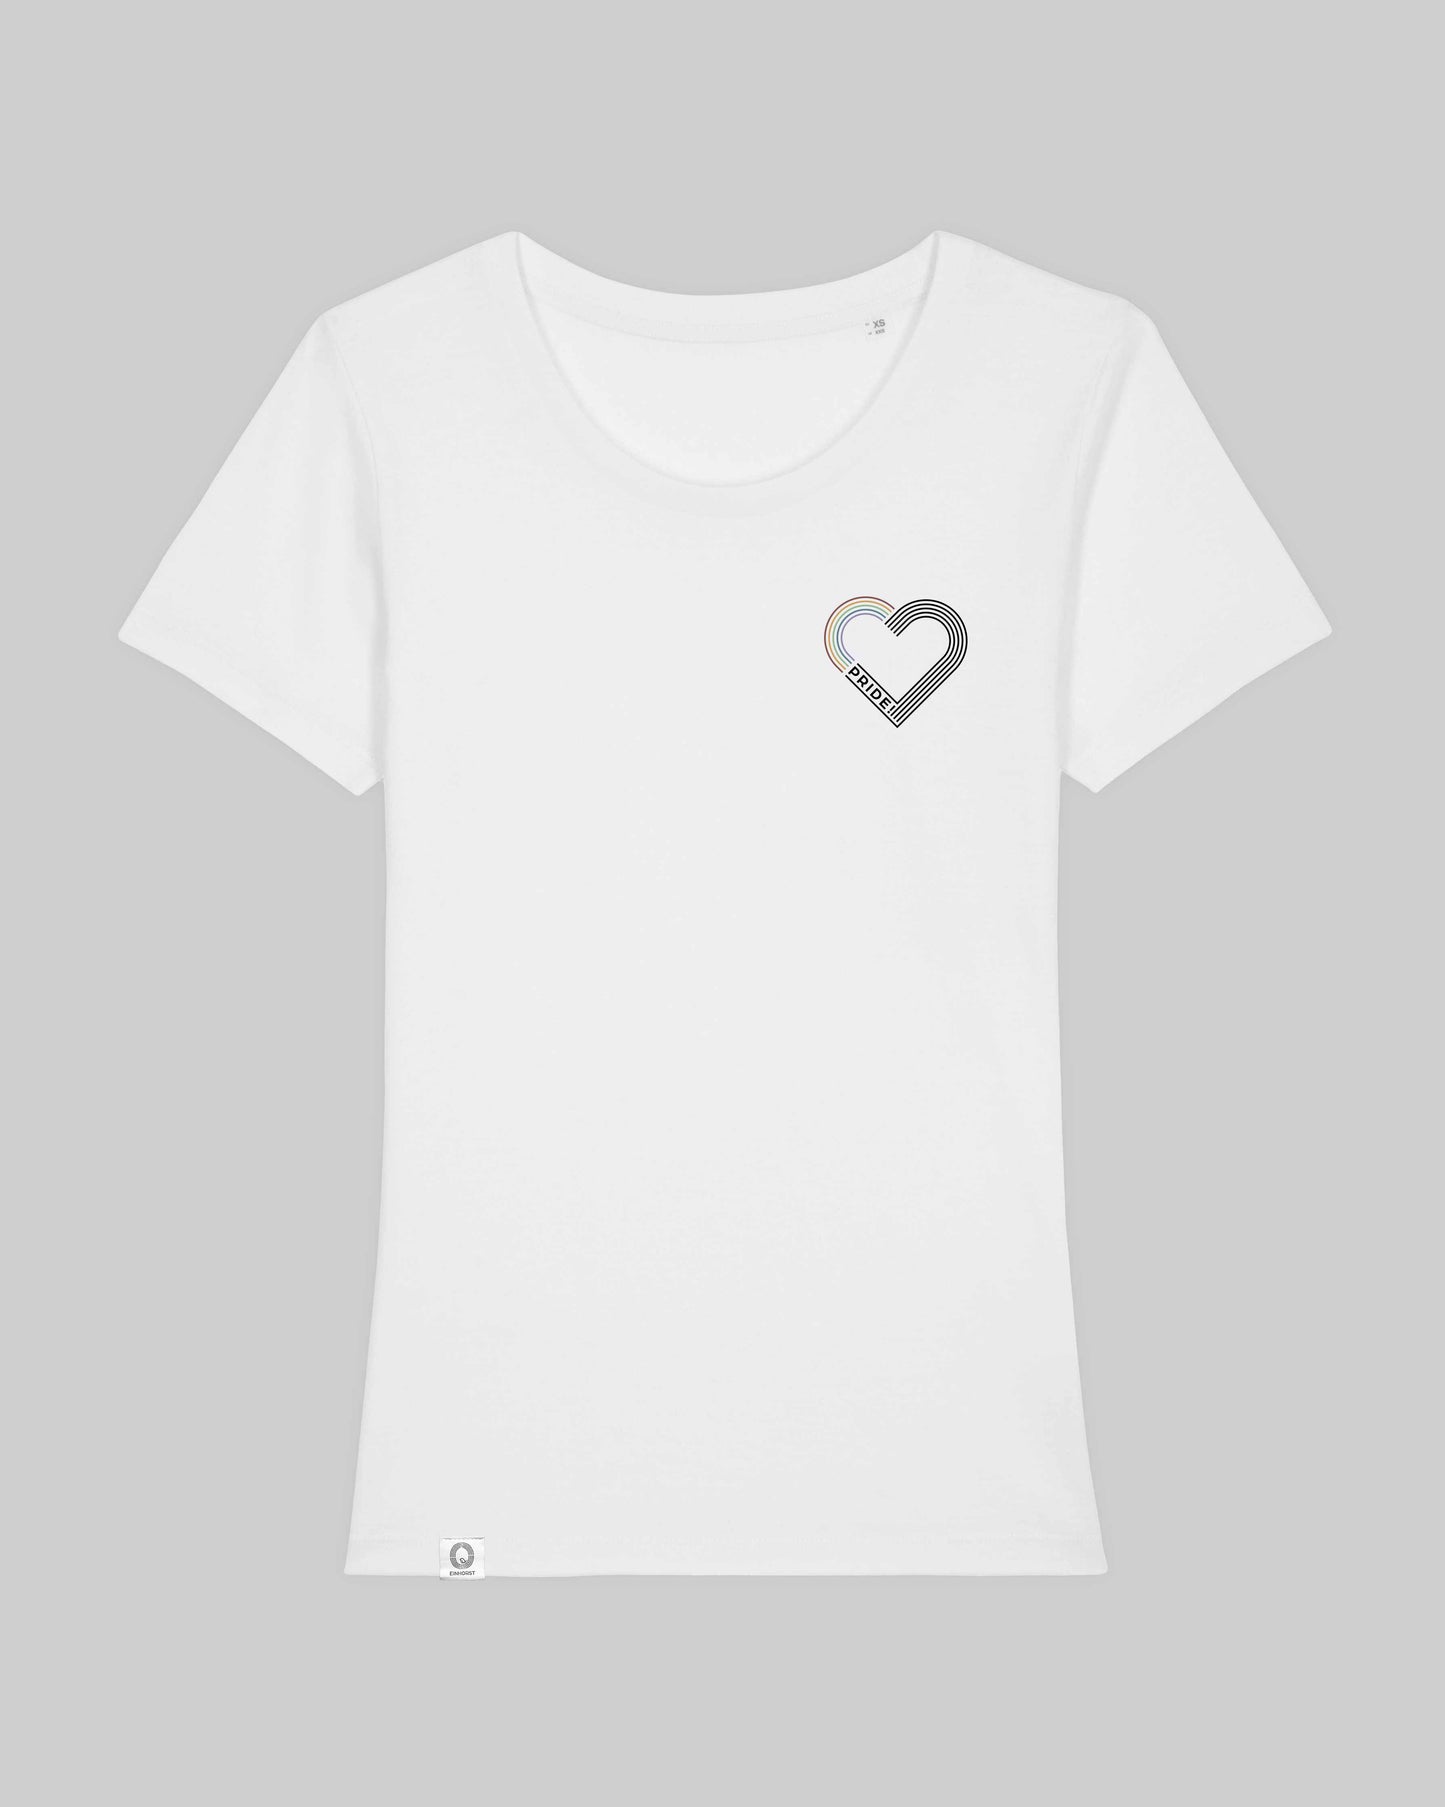 EINHORST® Organic Shirt tailliert in "Weiß" mit dem Motiv "pride Herz" in der Kombination bunter Regenbogen mit schwarzer Schrift, Bild von Shirt von vorne